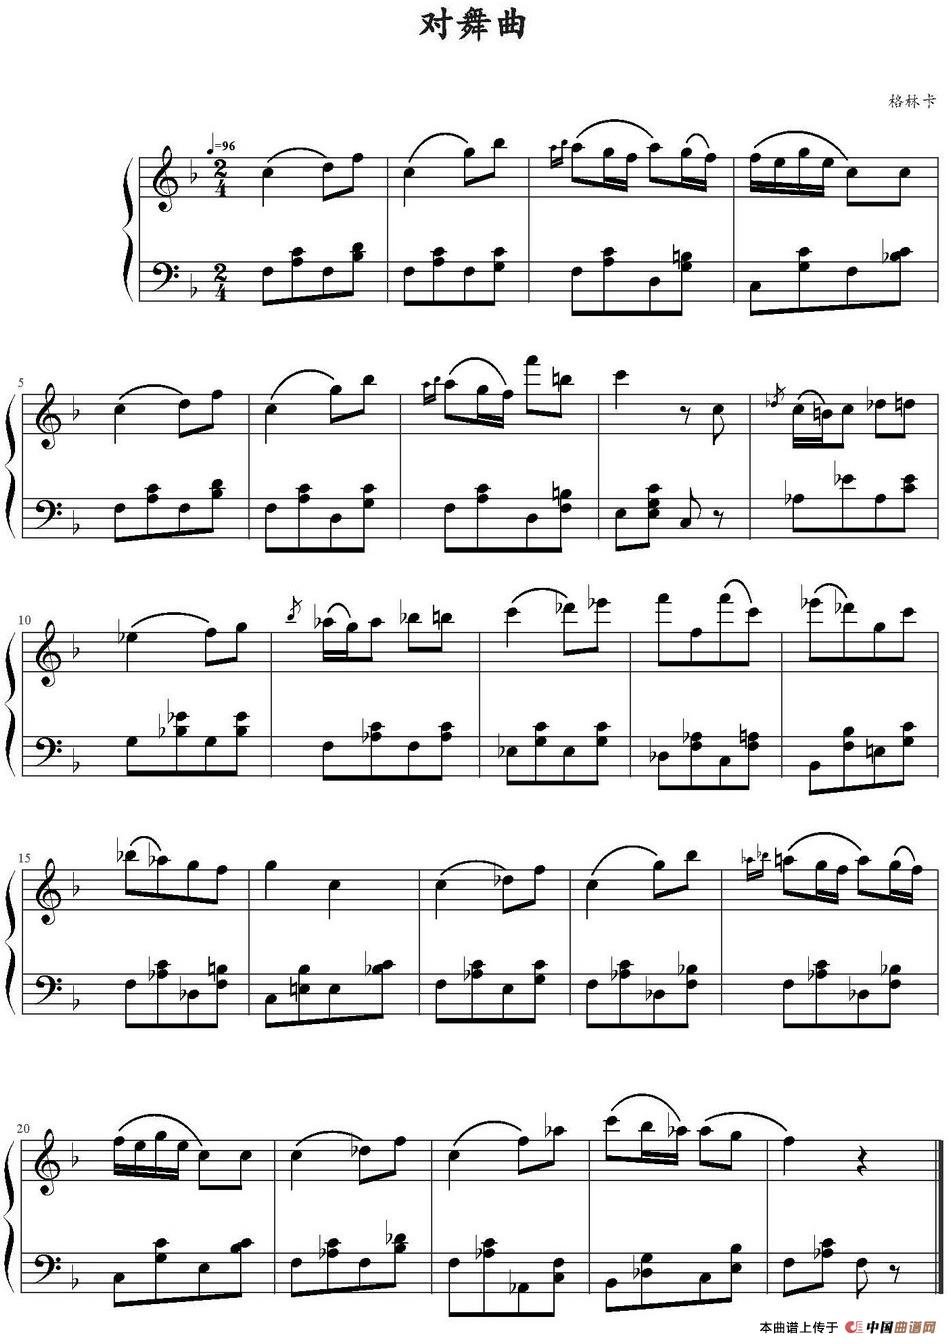 《对舞曲》钢琴曲谱图分享